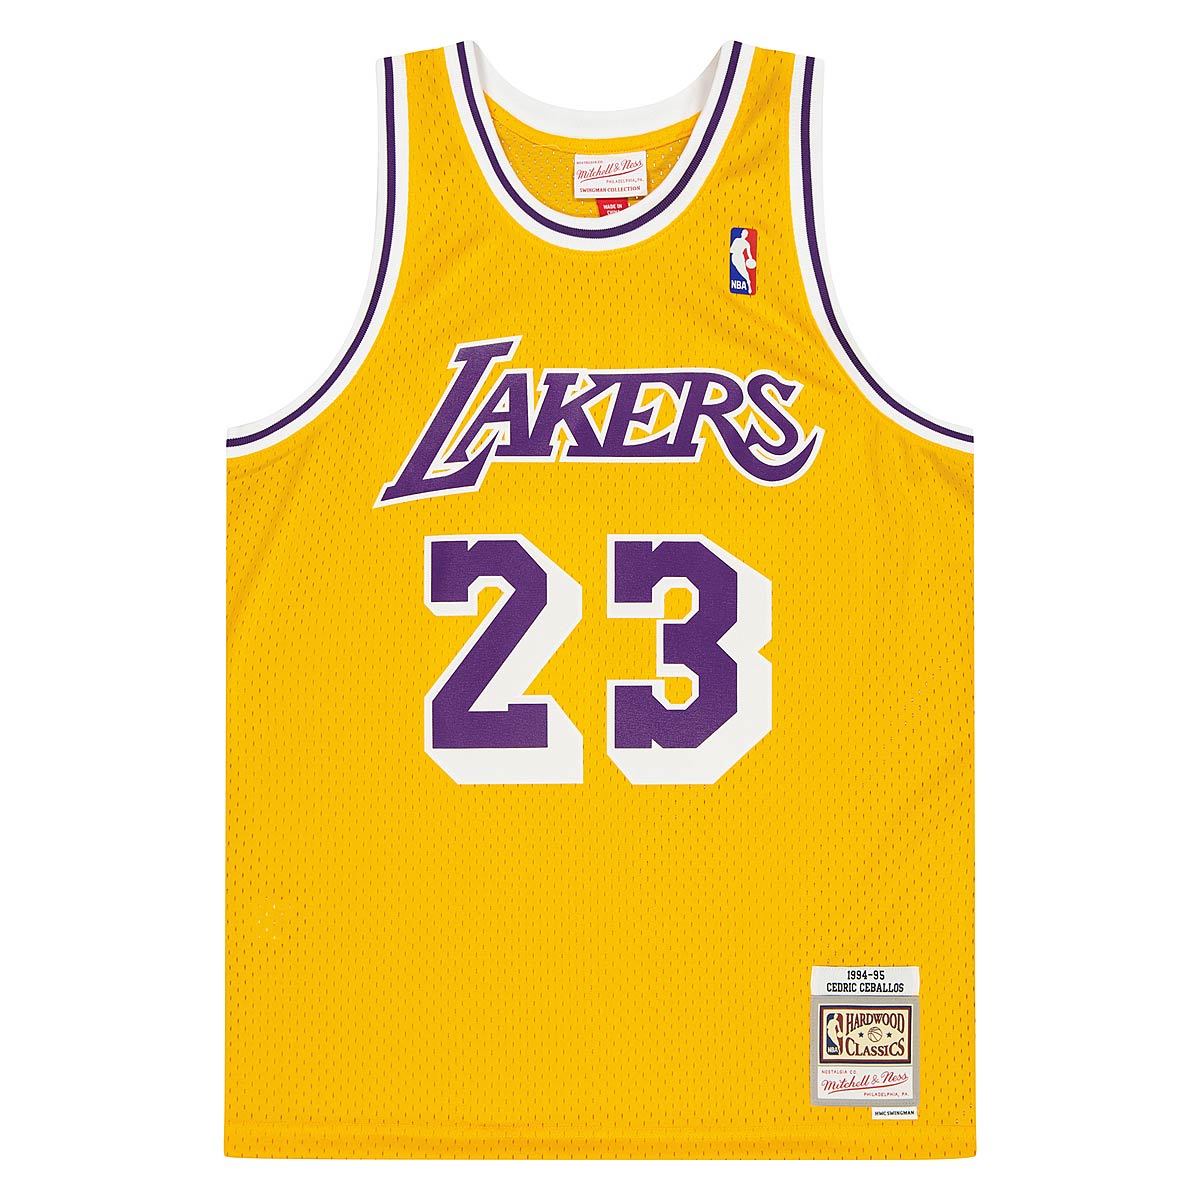 Mitchell And Ness Nba Swingman Jersey La Lakers 94 - Cedric Ceballos, Gold/Gold Lakers